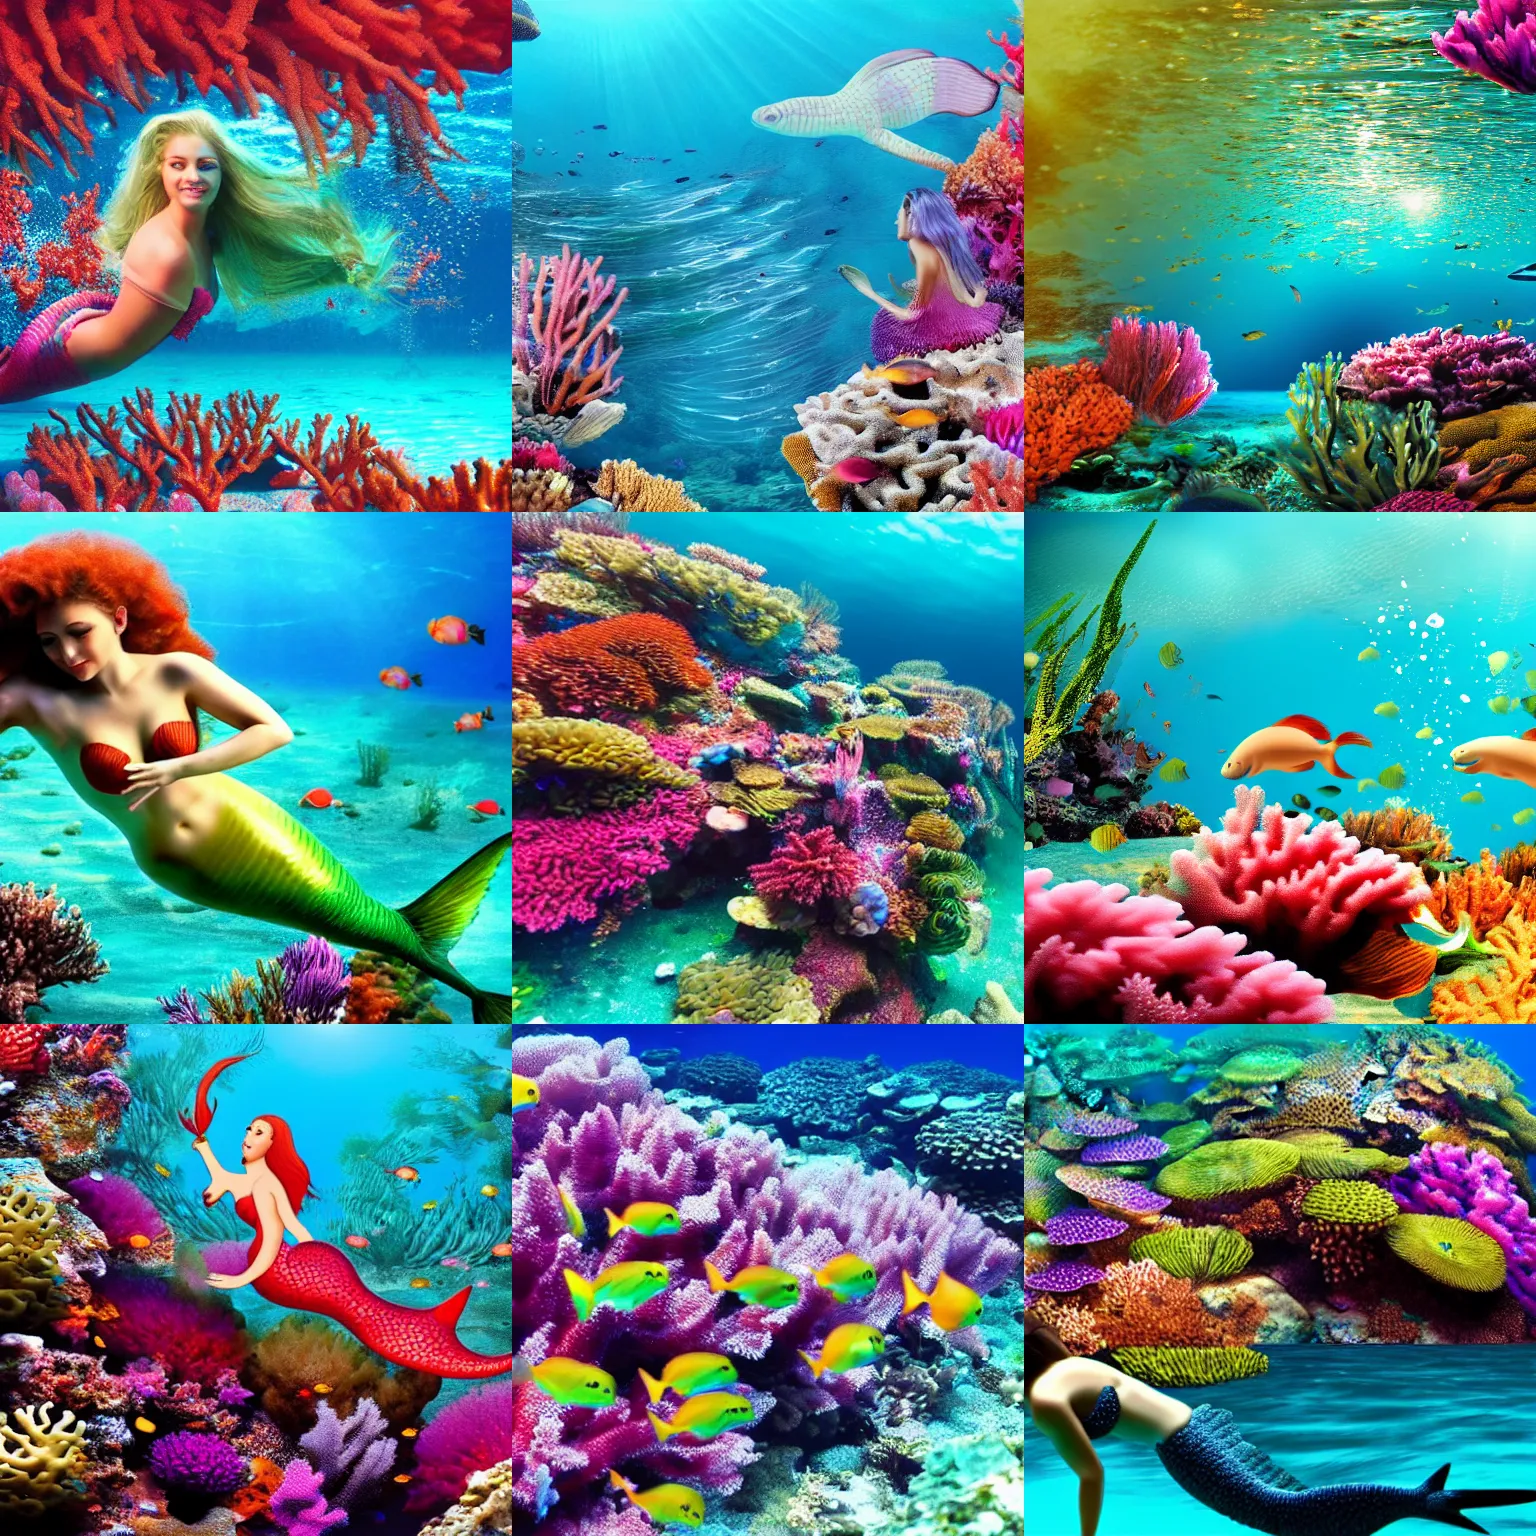 Prompt: beautiful mermaid swimming underwater coral reef, 4k,